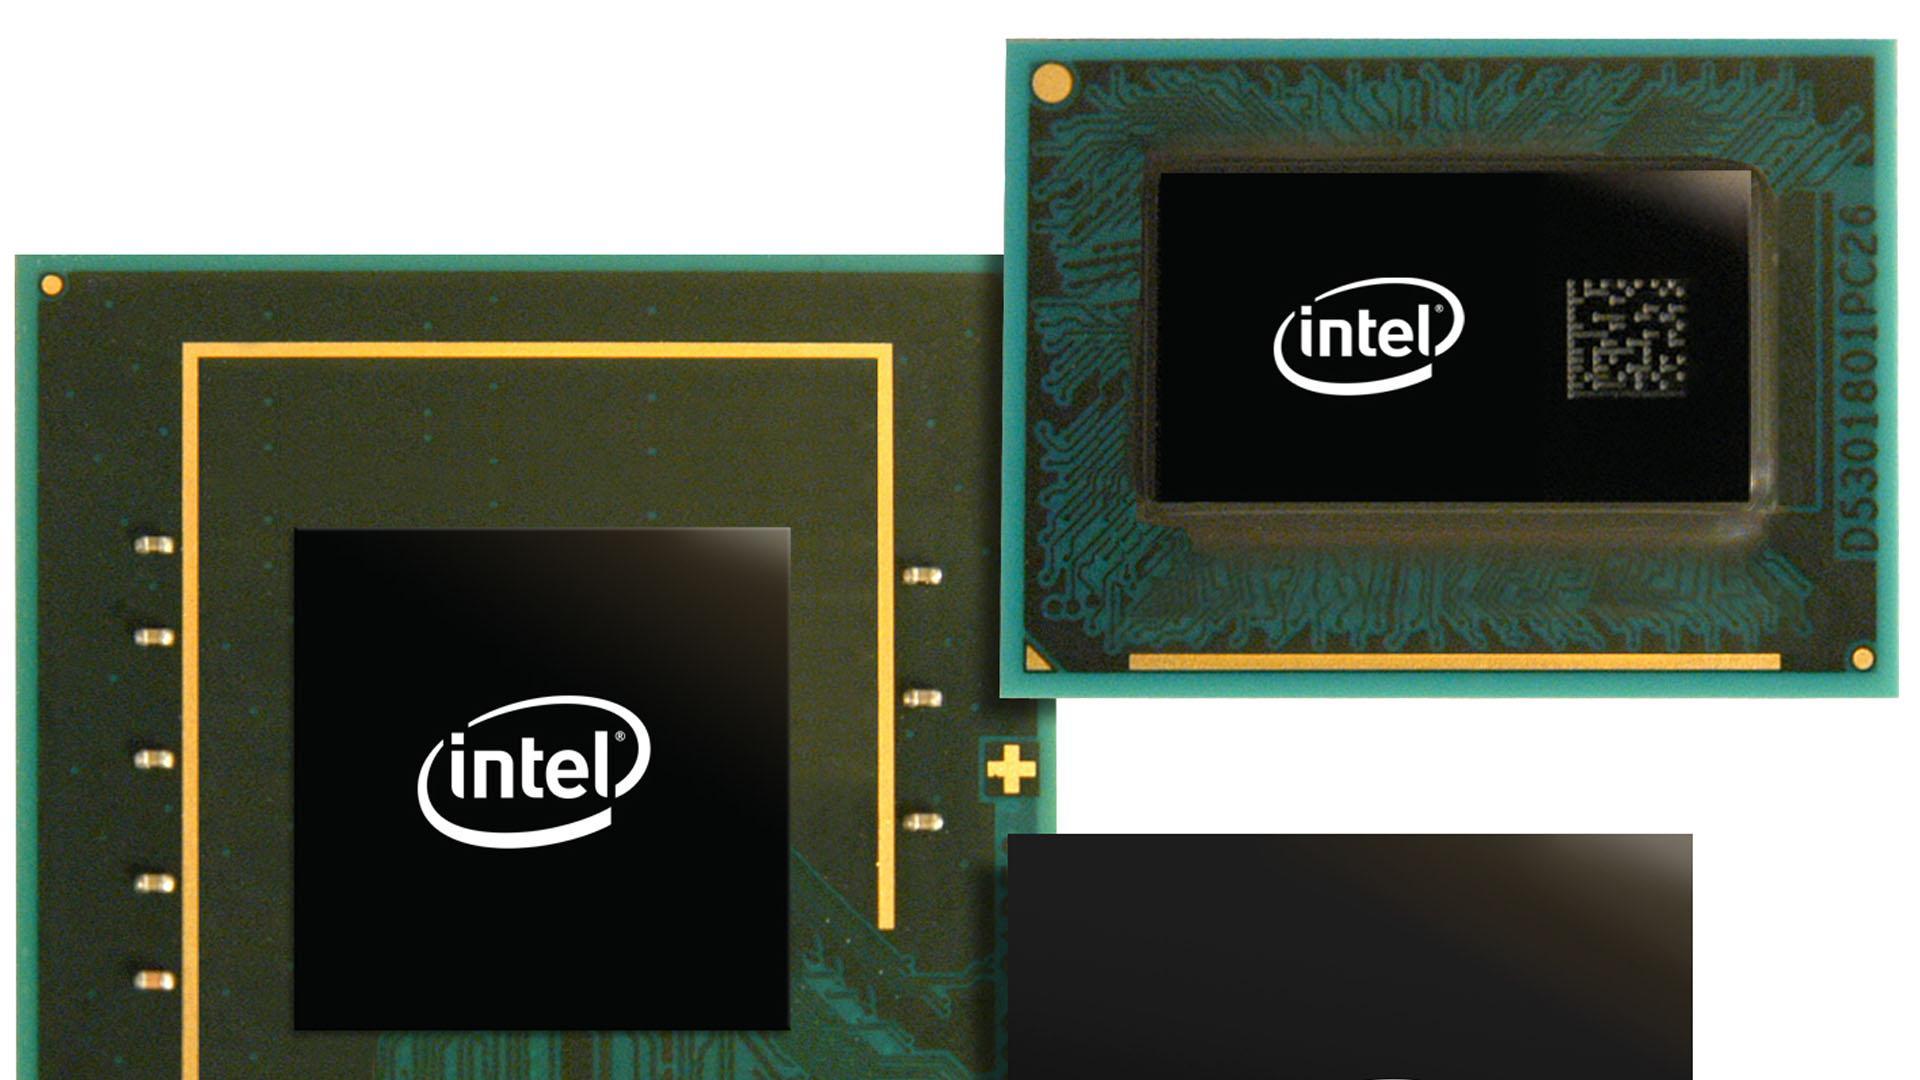 Tabela de codinomes dos chipsets da Intel